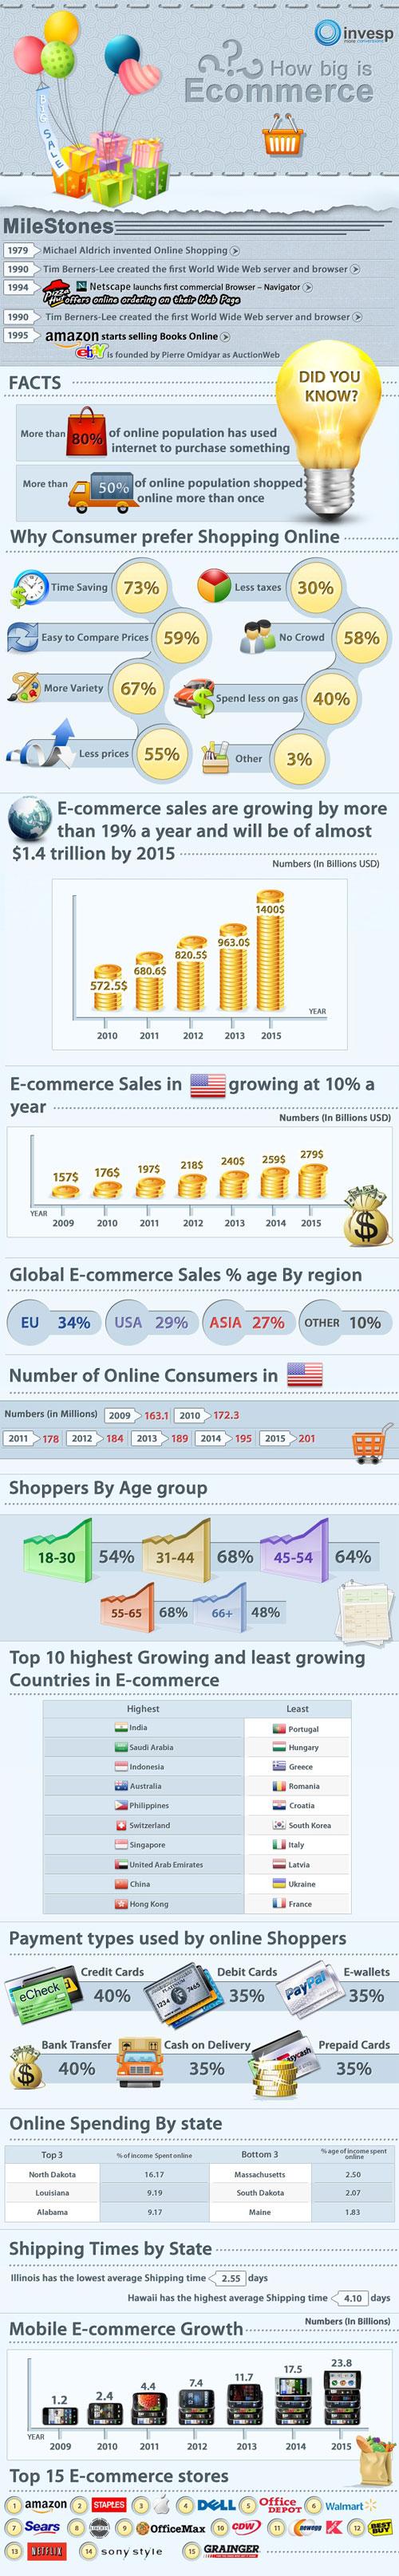 L'état du e-commerce en juillet 2011